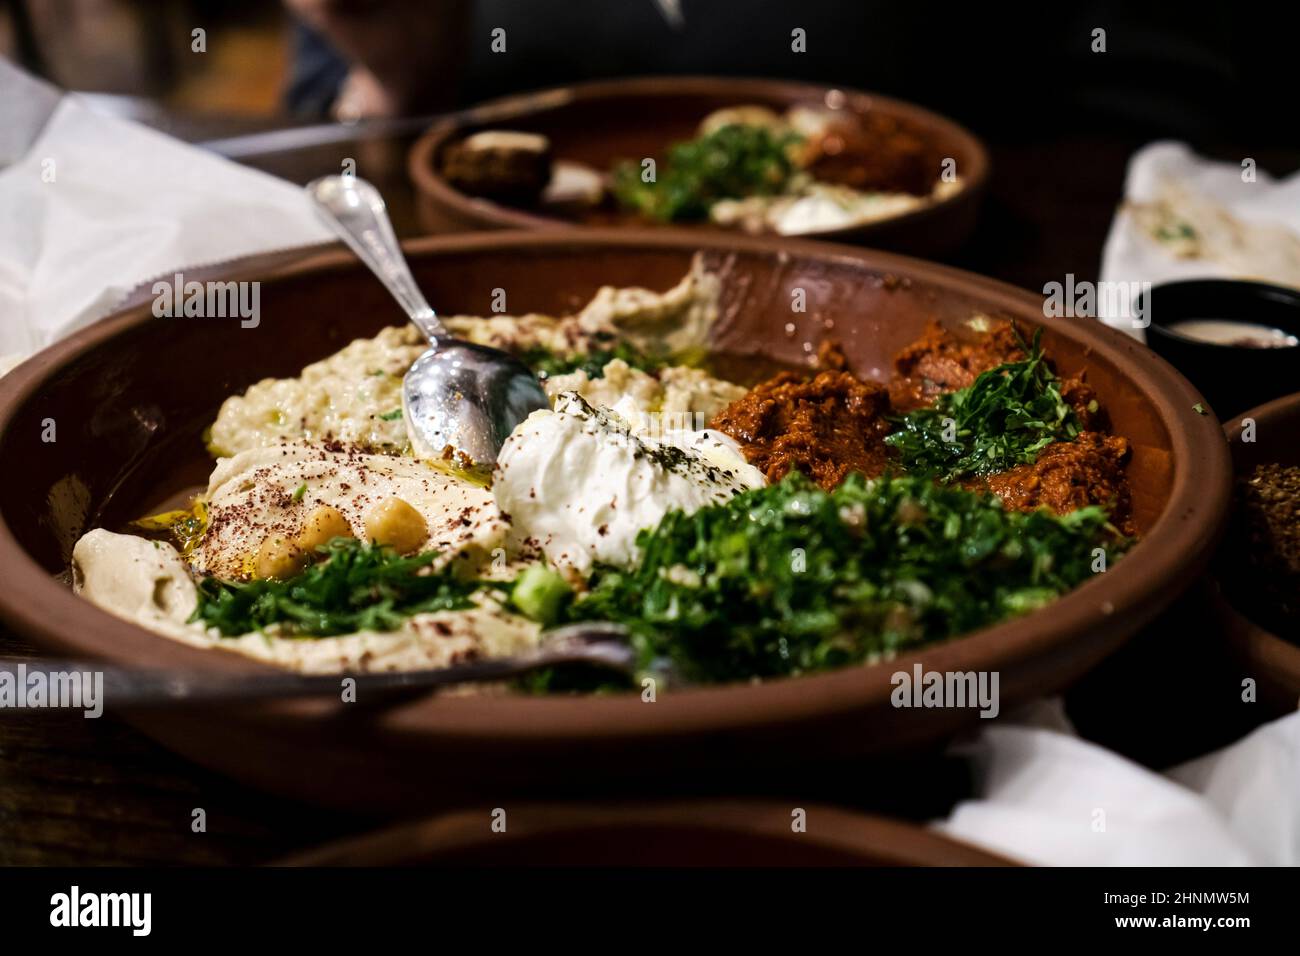 Verschiedene Gerichte aus dem Nahen Osten, darunter Hummus, baba Ghanoush, Tabbouleh und Salat. Orientalische Vorspeise auf rostigen Tellern Stockfoto